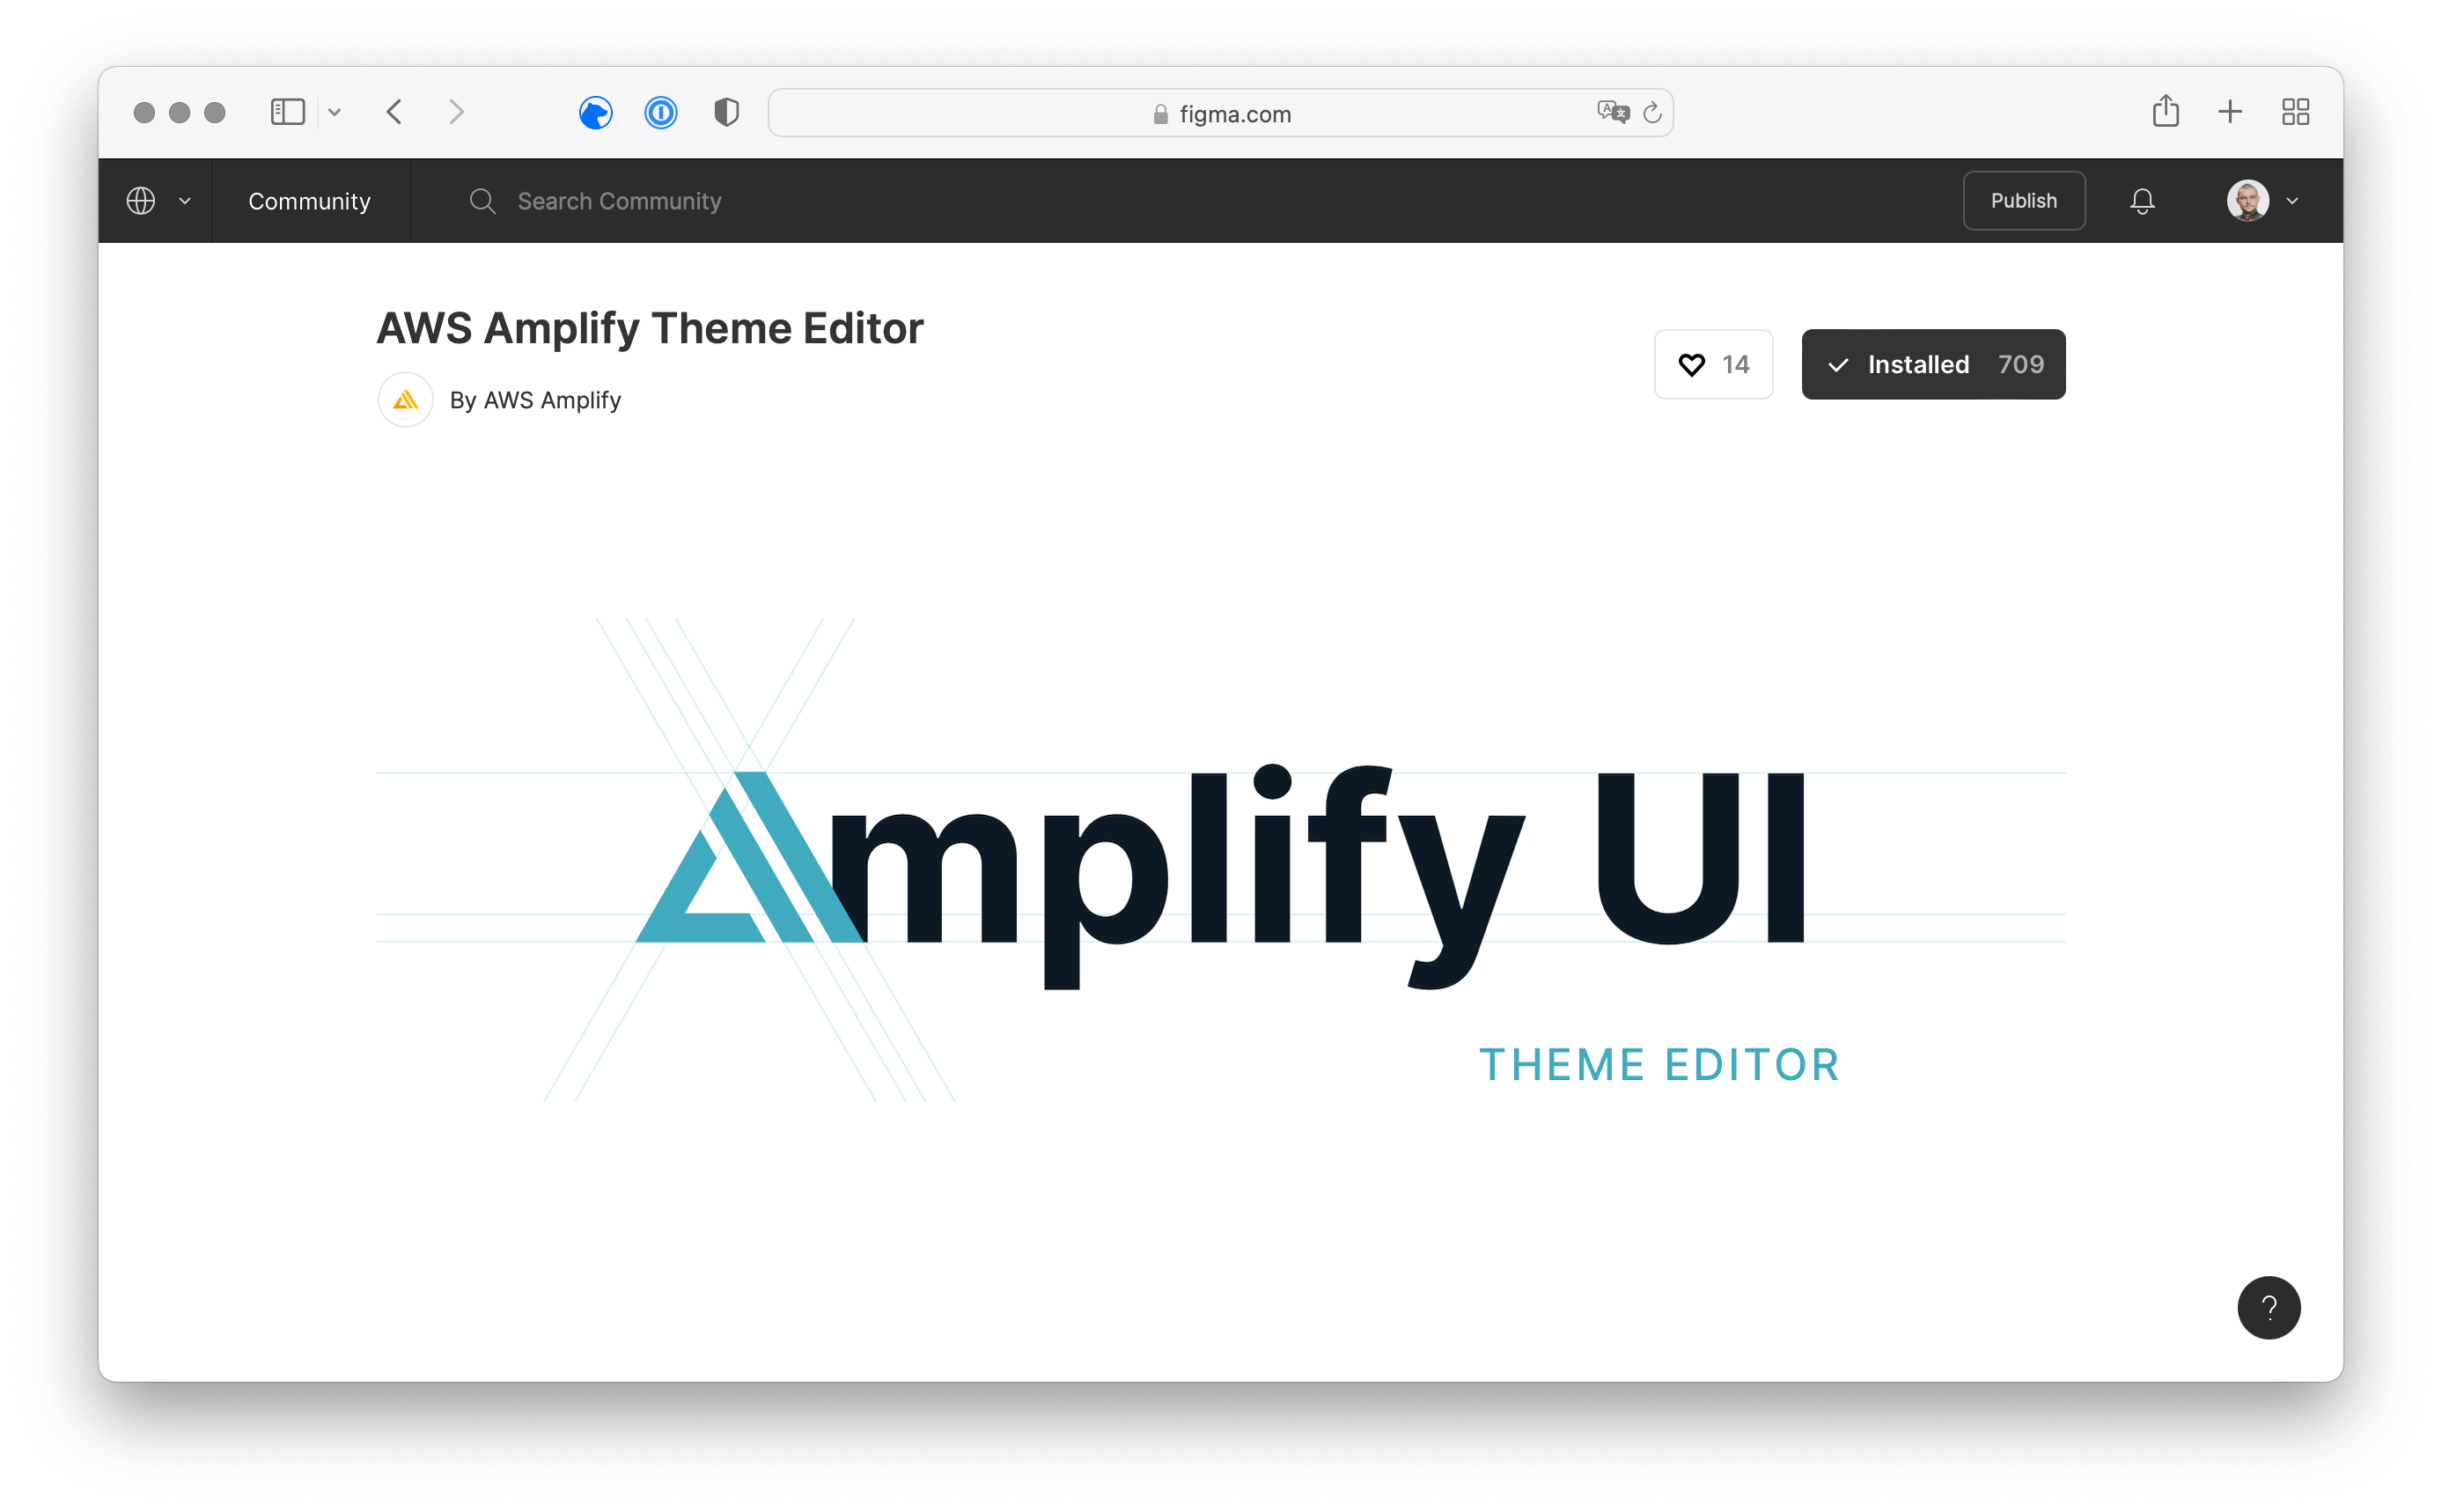 AWS Amplify Theme Editor plugin for Figma